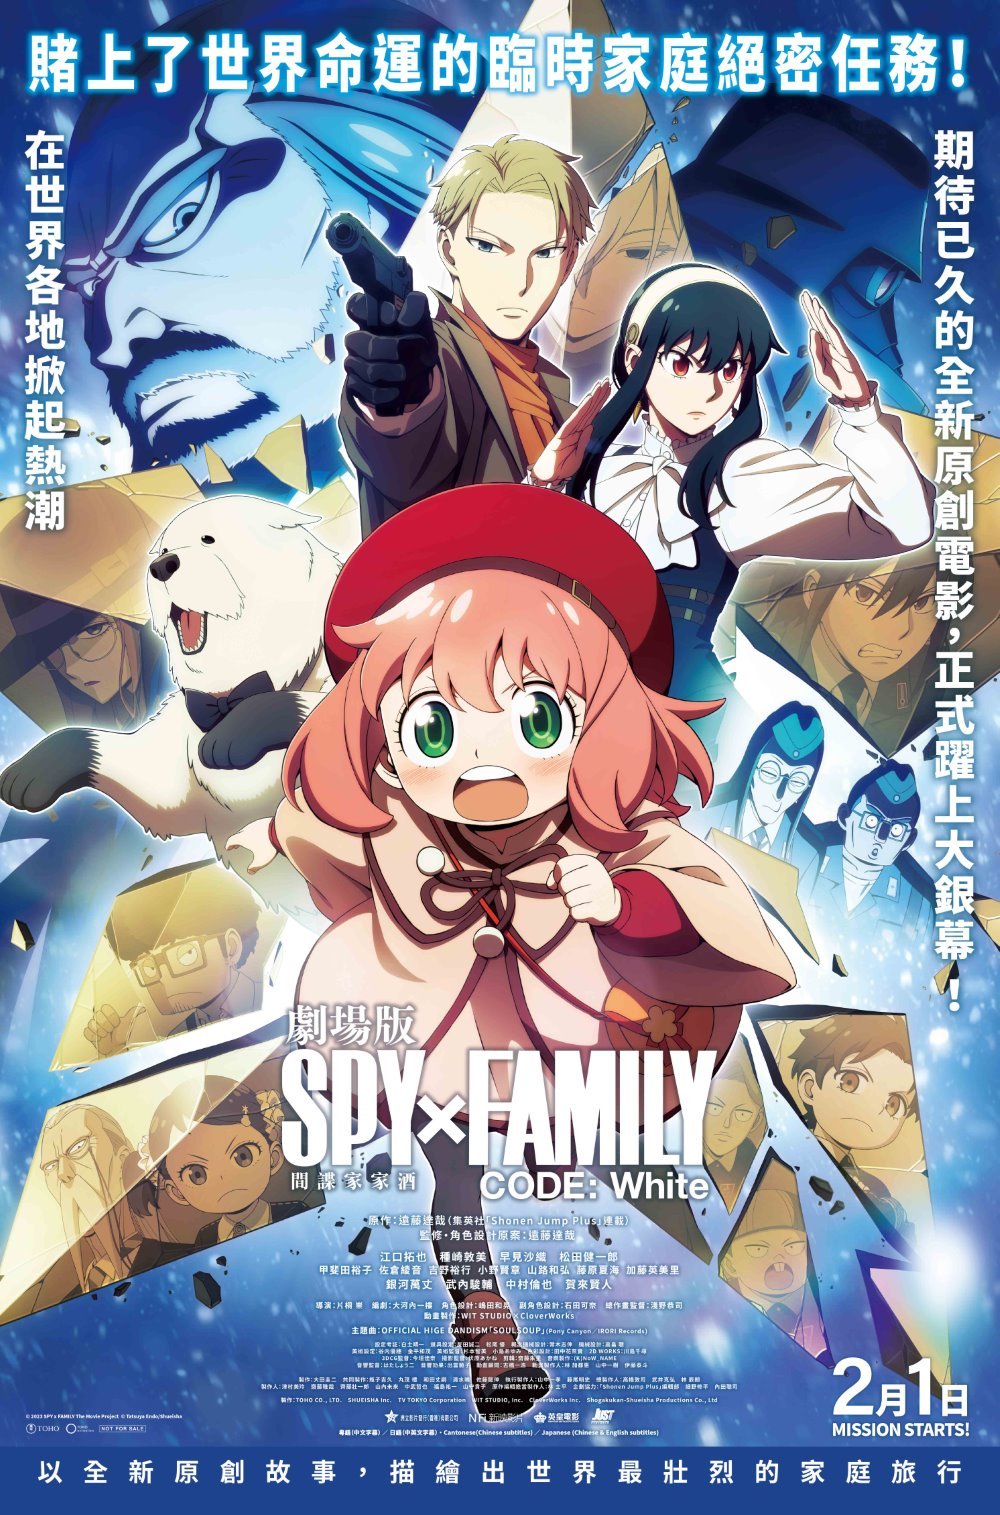 劇場版 SPY × FAMILY CODE: White (日語版)電影圖片 - IMG_2076.jpeg_1705296679.jpg